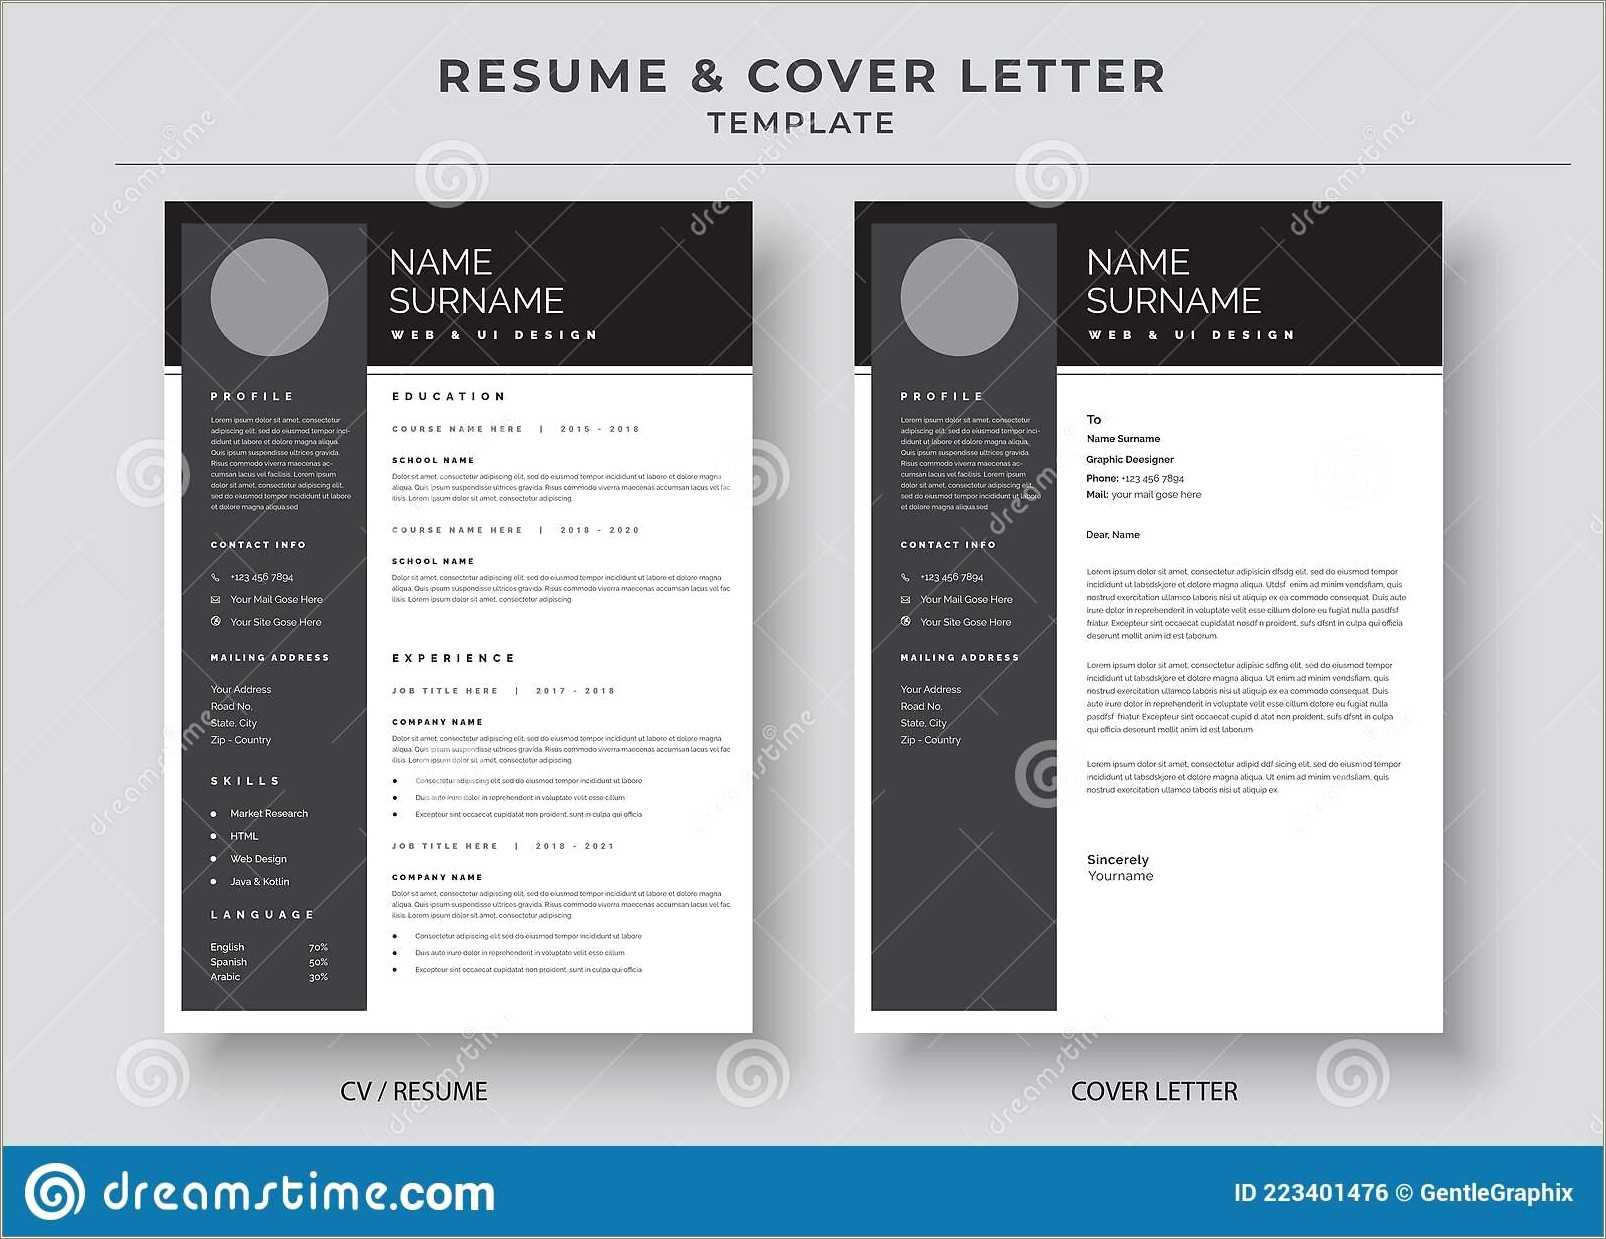 Sample Resume Cover Letter 2018